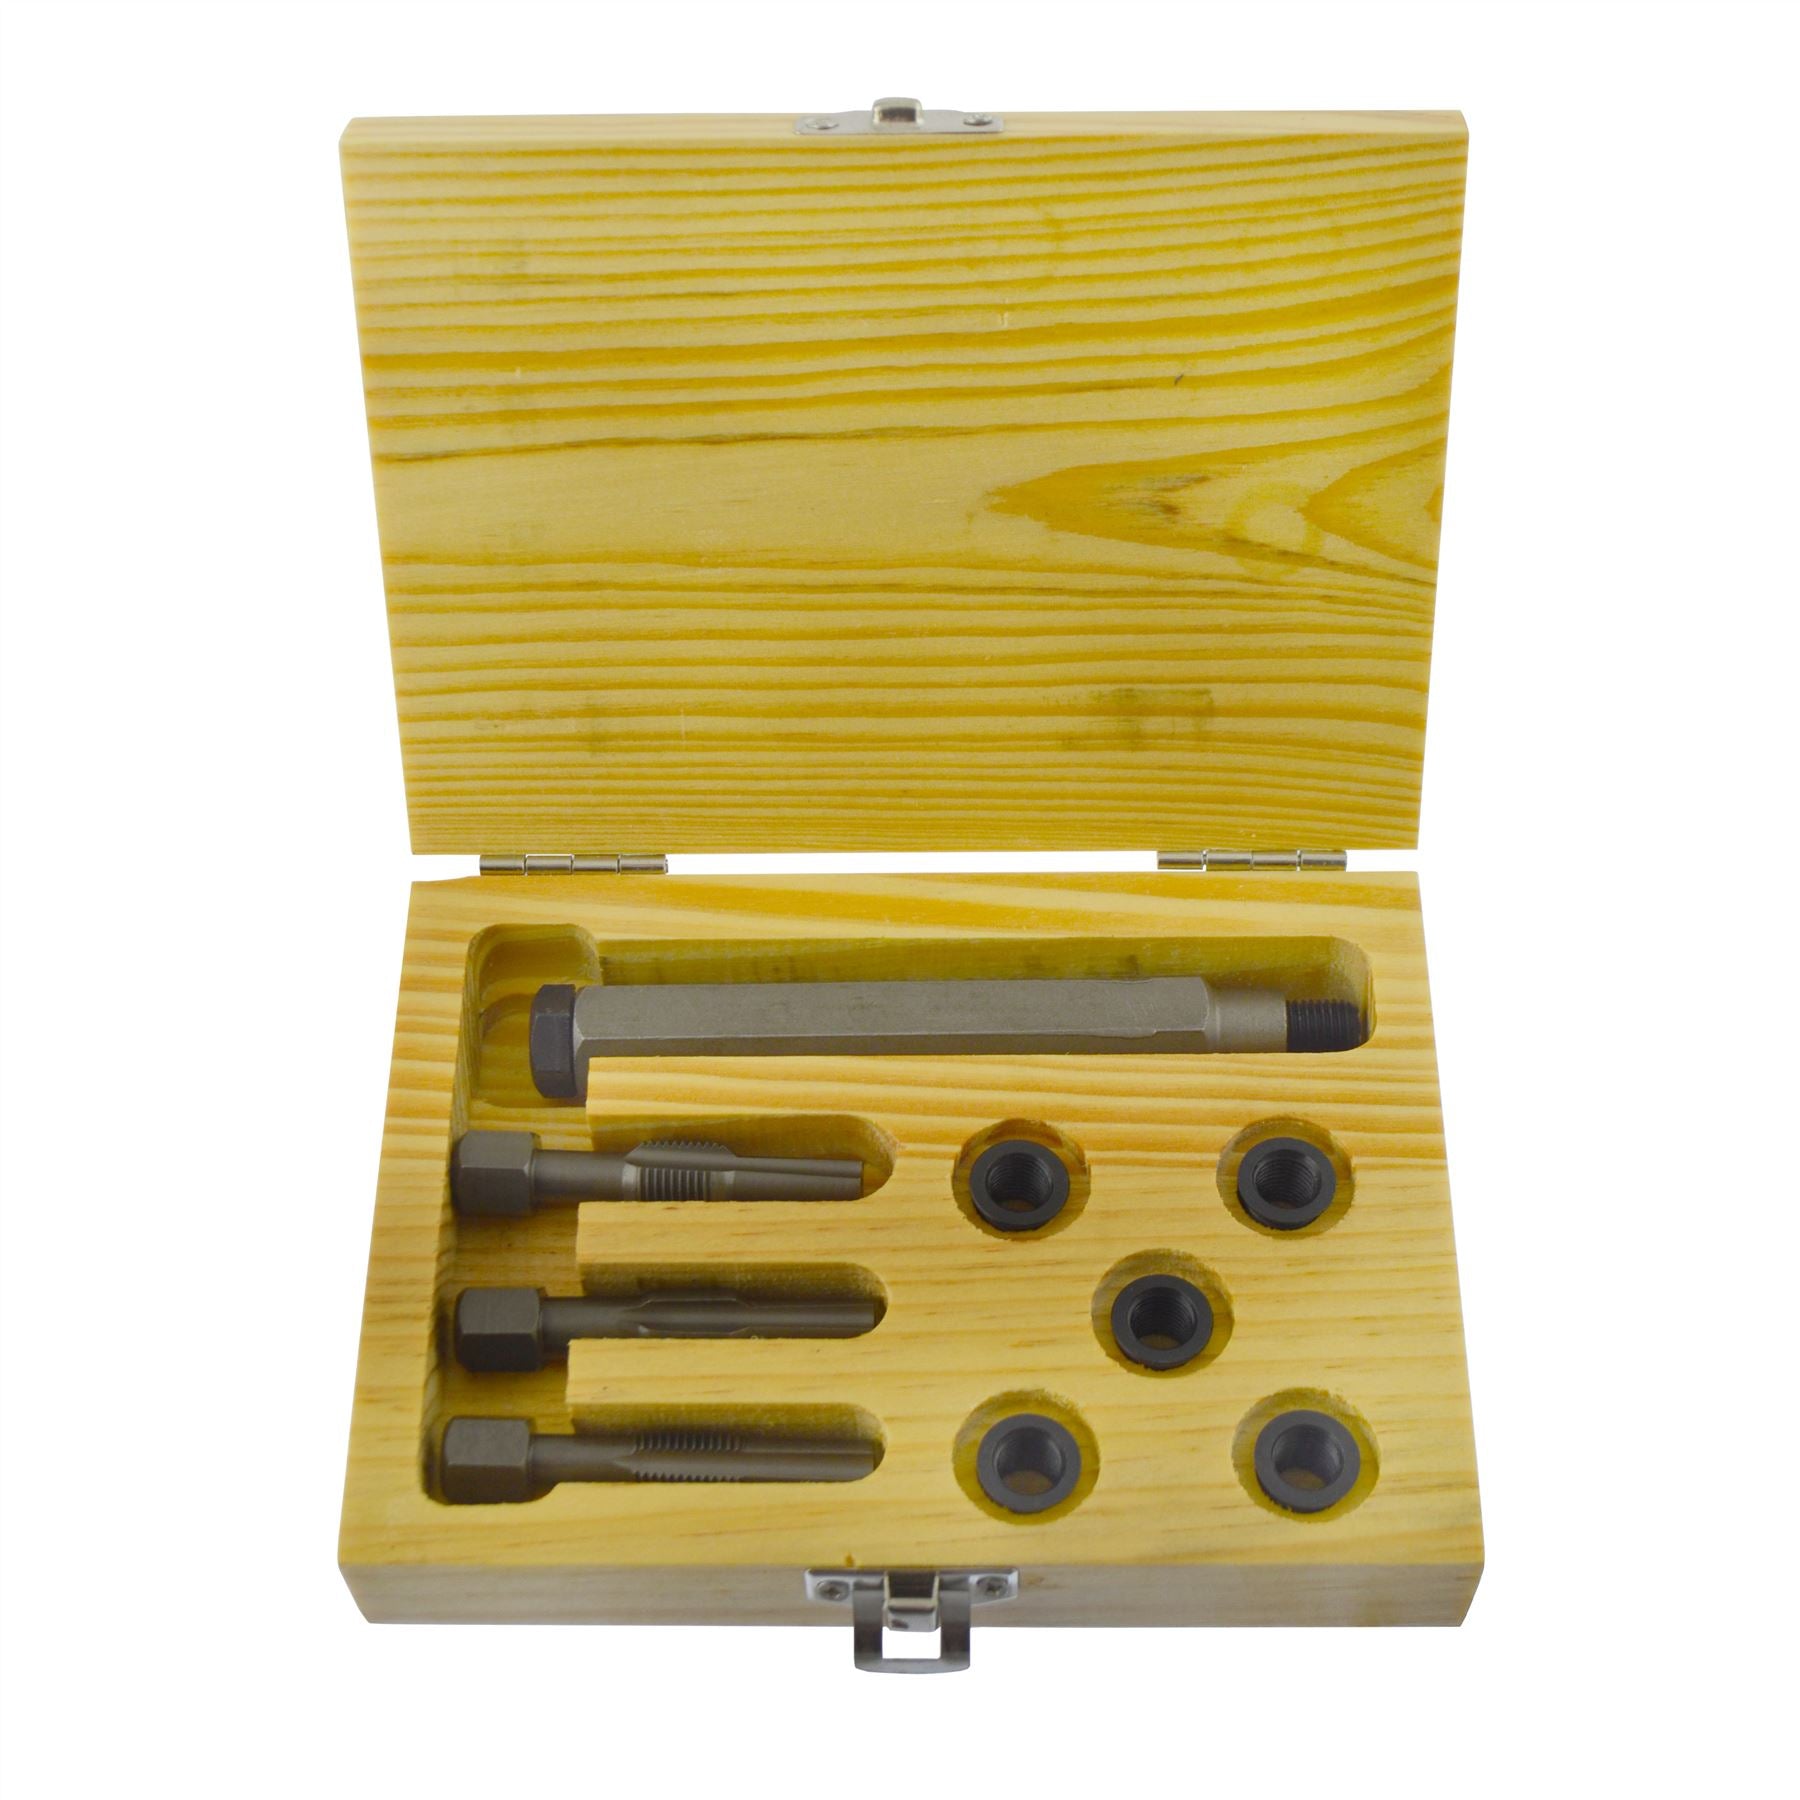 Glow Plug Cylinder Head Metric Thread Repair Restorer Tap Kit M8 x 1.0mm